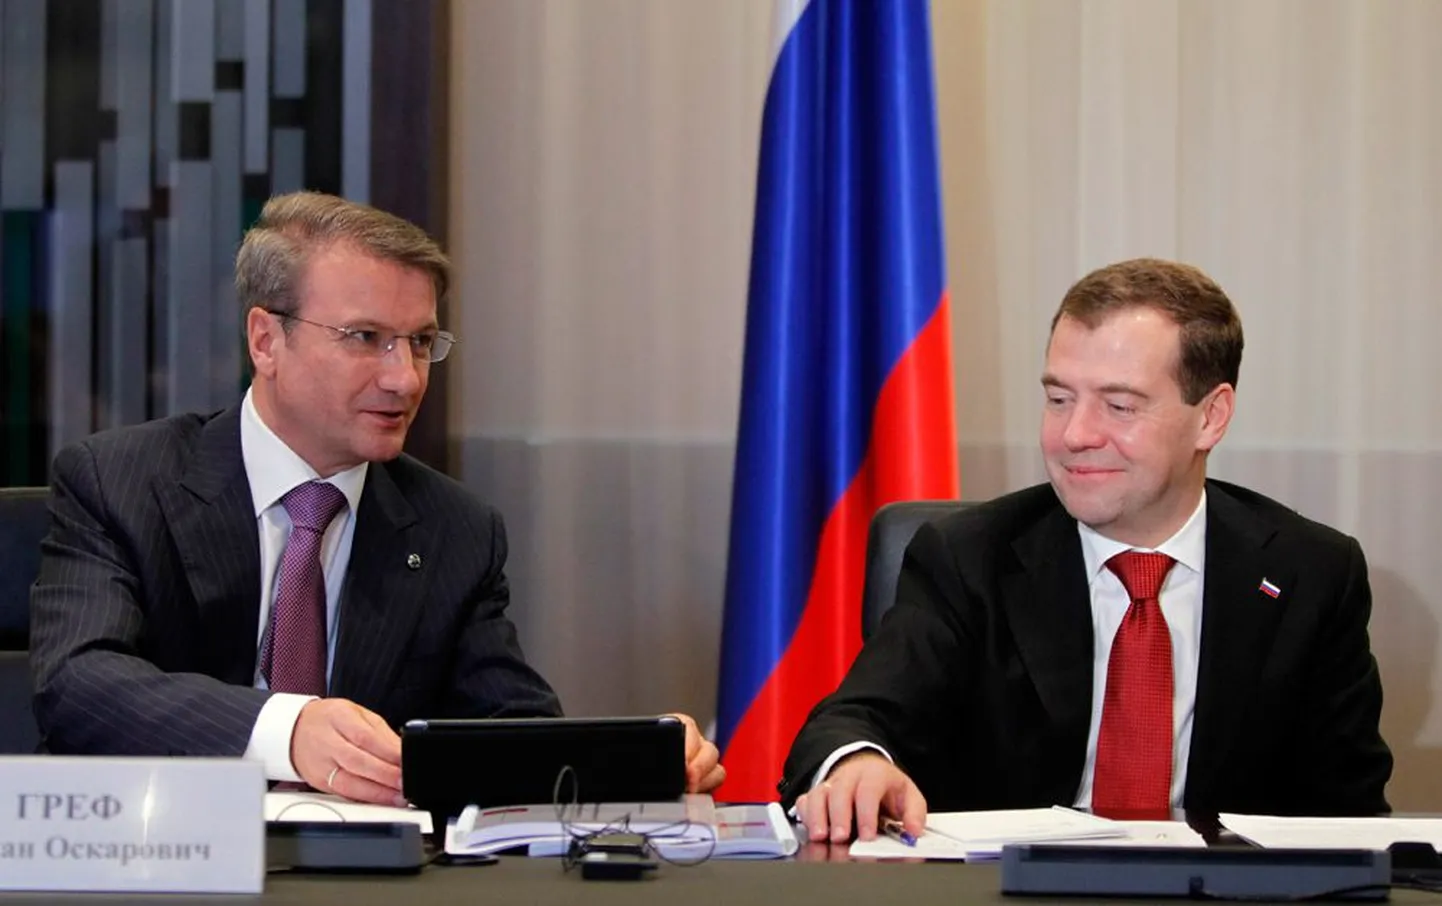 Venemaa president Dmitri Medvedev ja Sberbanki nõukogu esimees German Gref möödunud reedel Moskvas Sberbanki peakorteris peetud nõupidamisel.